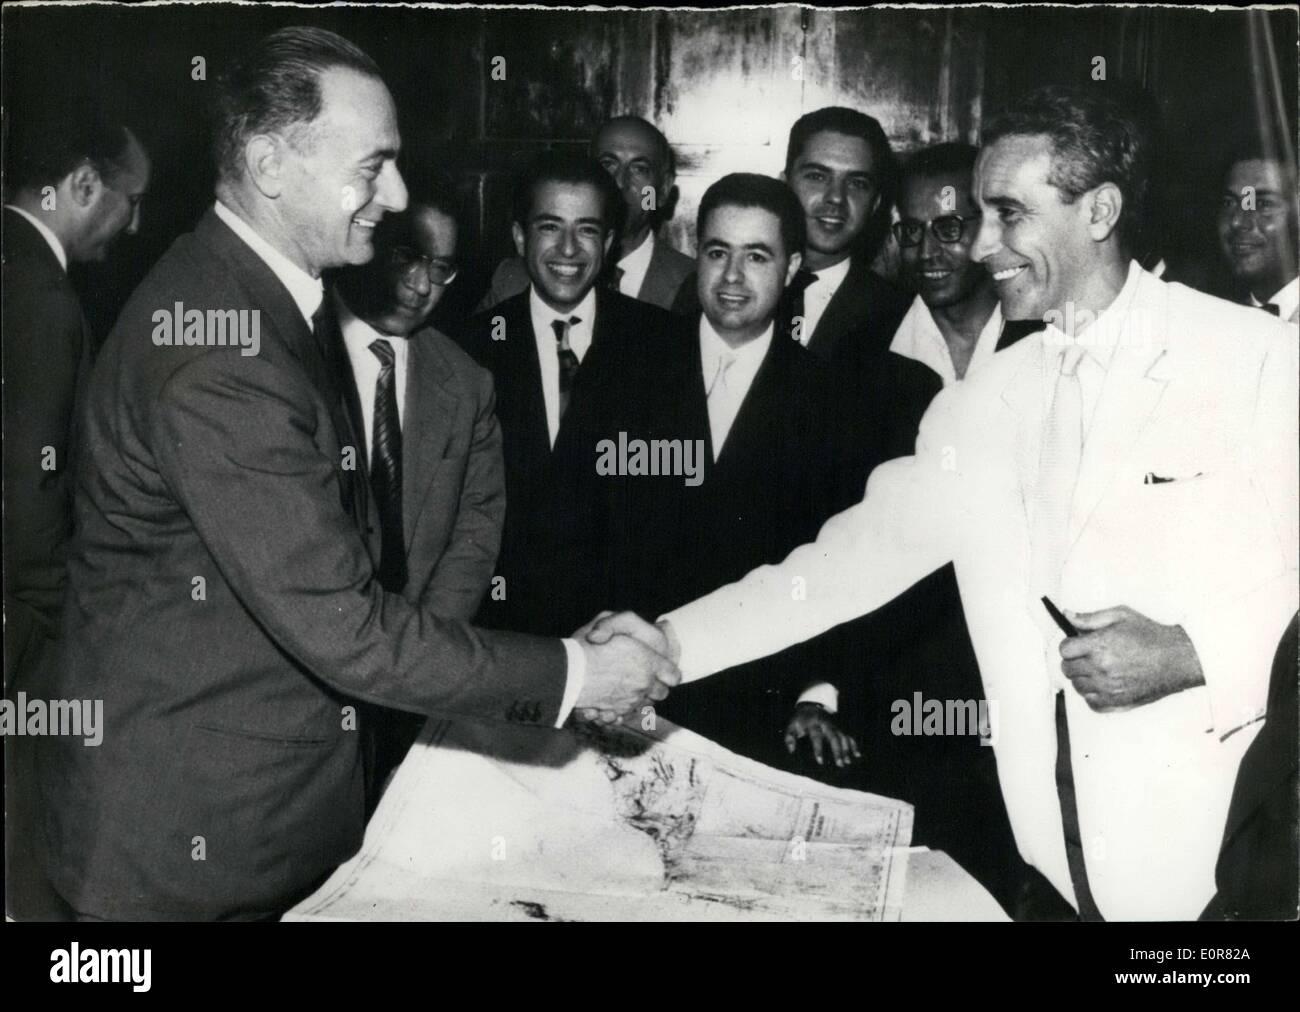 Lug. 27, 1958 - Un accordo tra Italia e Marocco è stato firmato a Rabat ieri. Un business con un capitale di 100 milioni di franchi è stato creato per la ricerca e l'olio raccolto nella regione di Tarfaya. Foto Stock